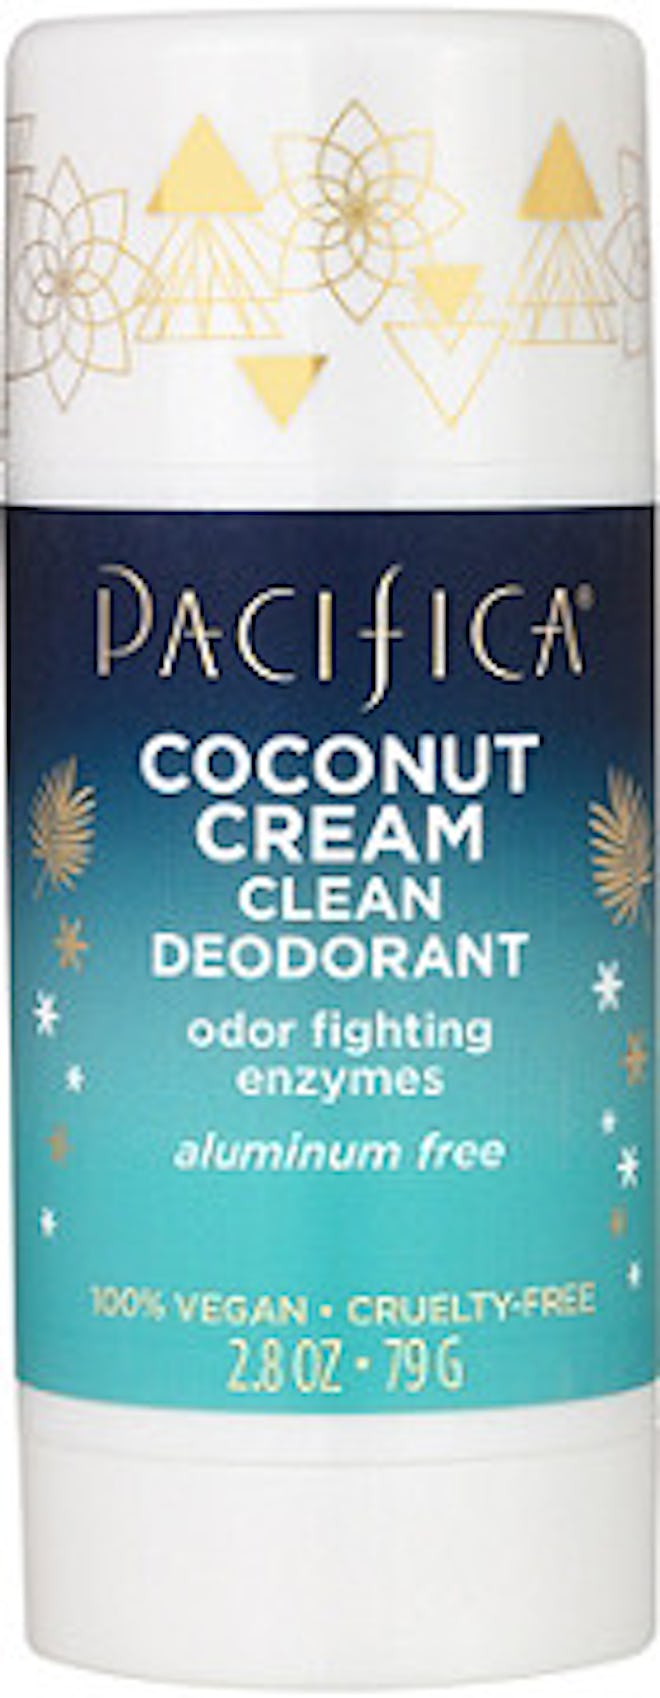 Coconut Cream Clean Deodorant